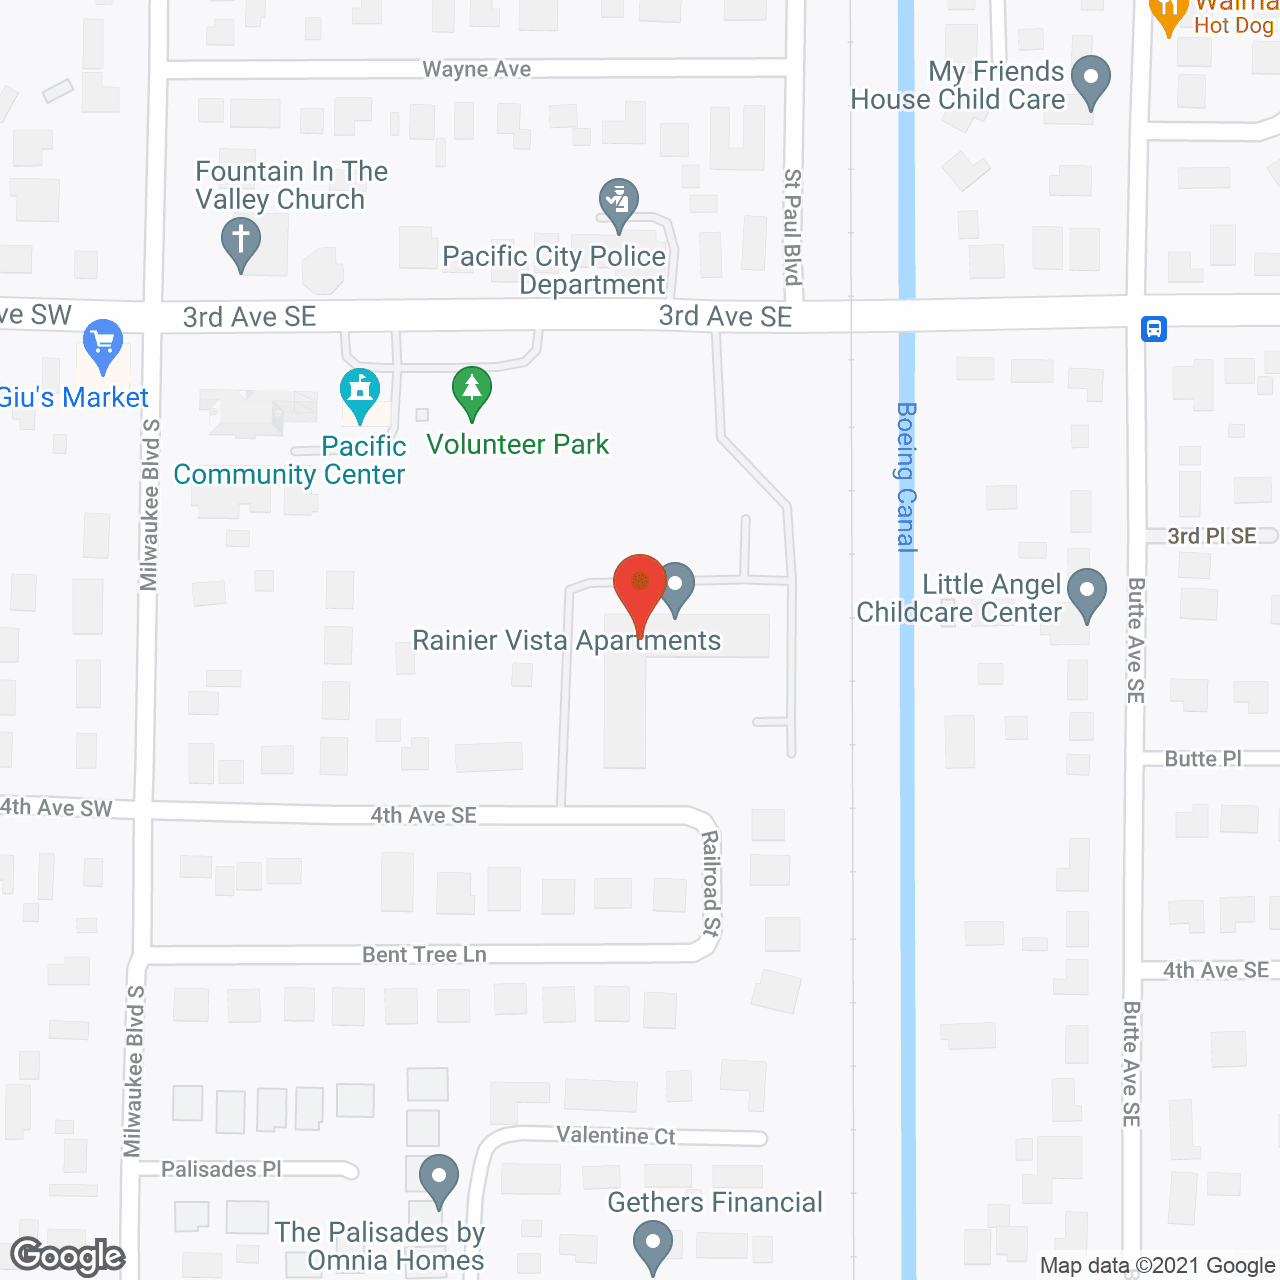 Rainier Vista Apartments in google map